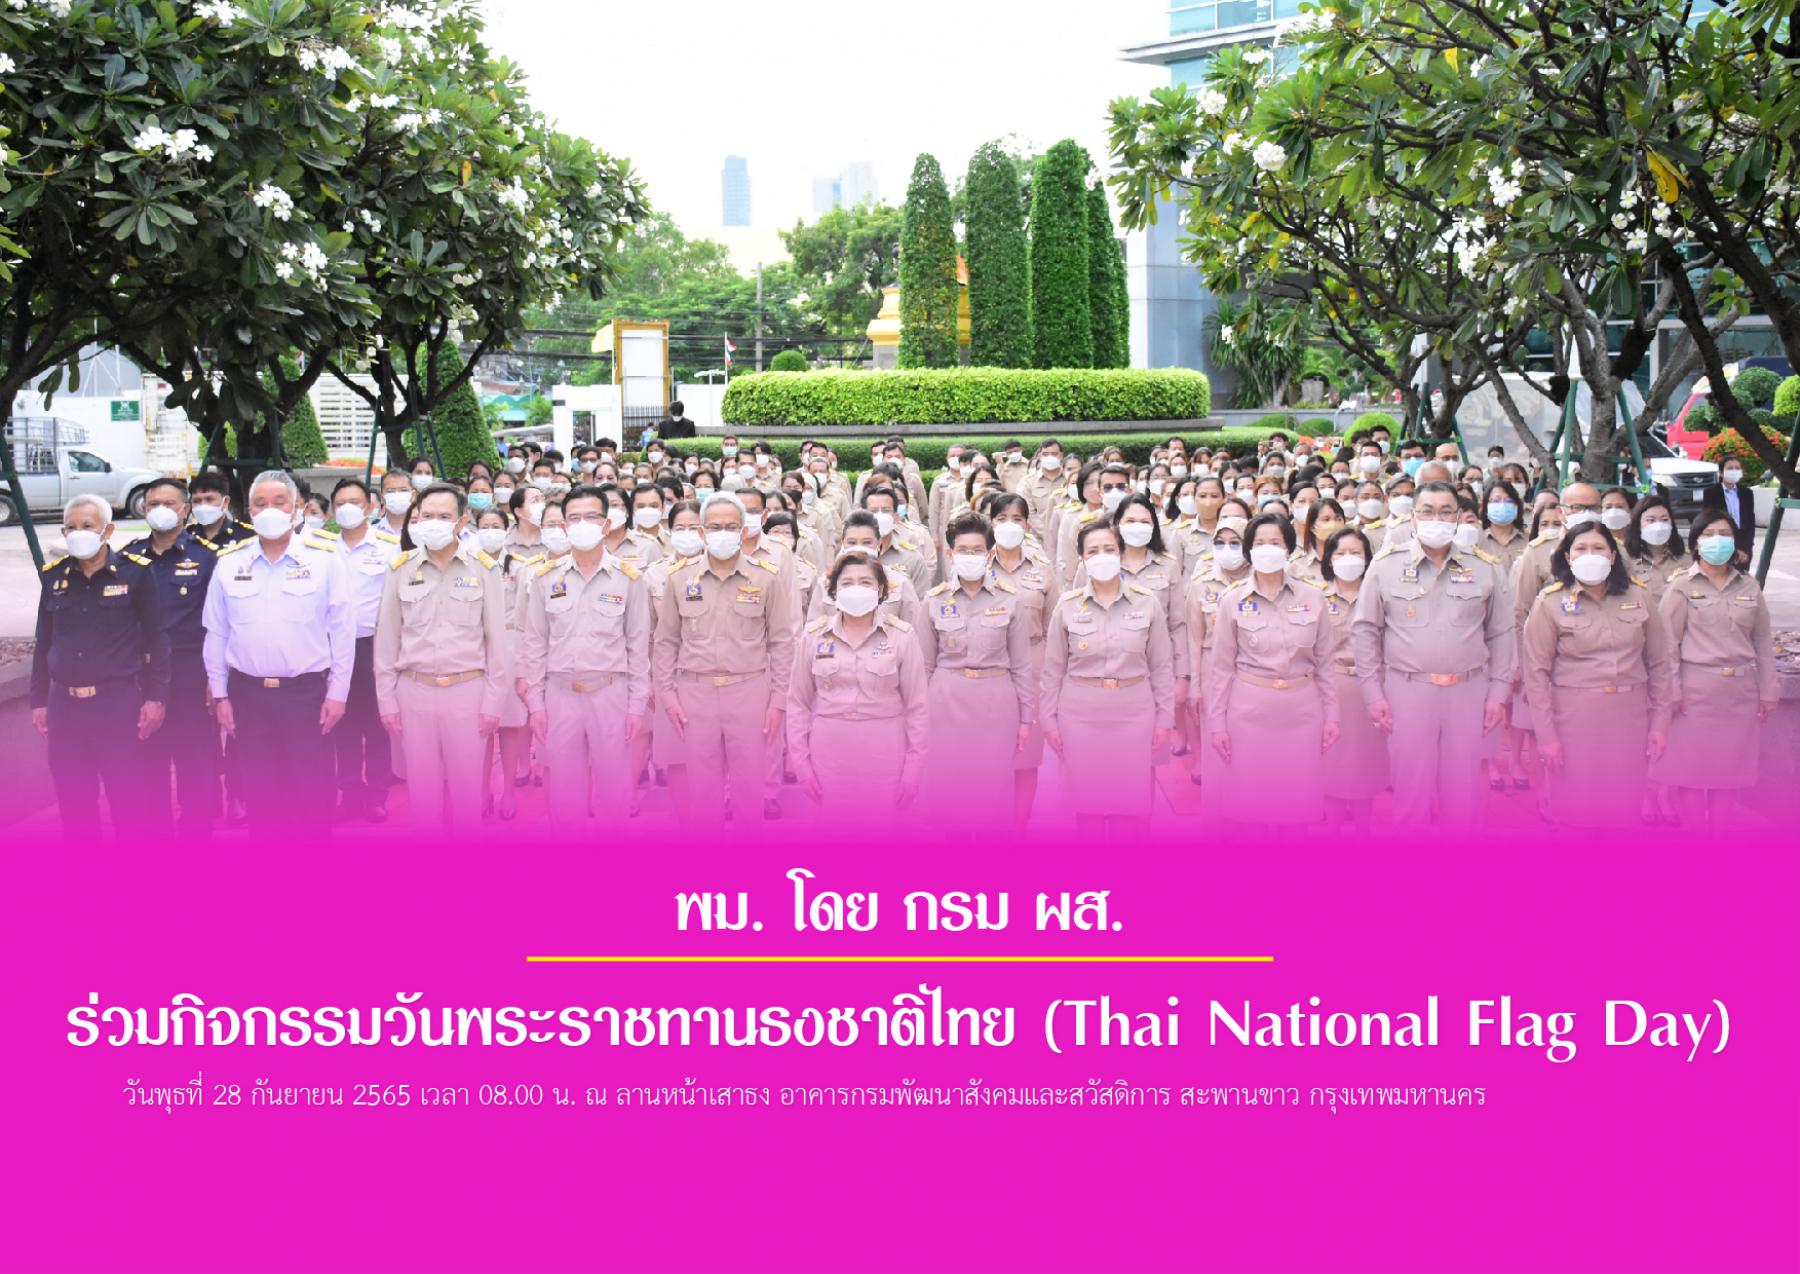 พม. โดย กรม ผส. ร่วมกิจกรรมวันพระราชทานธงชาติไทย (Thai National Flag Day)